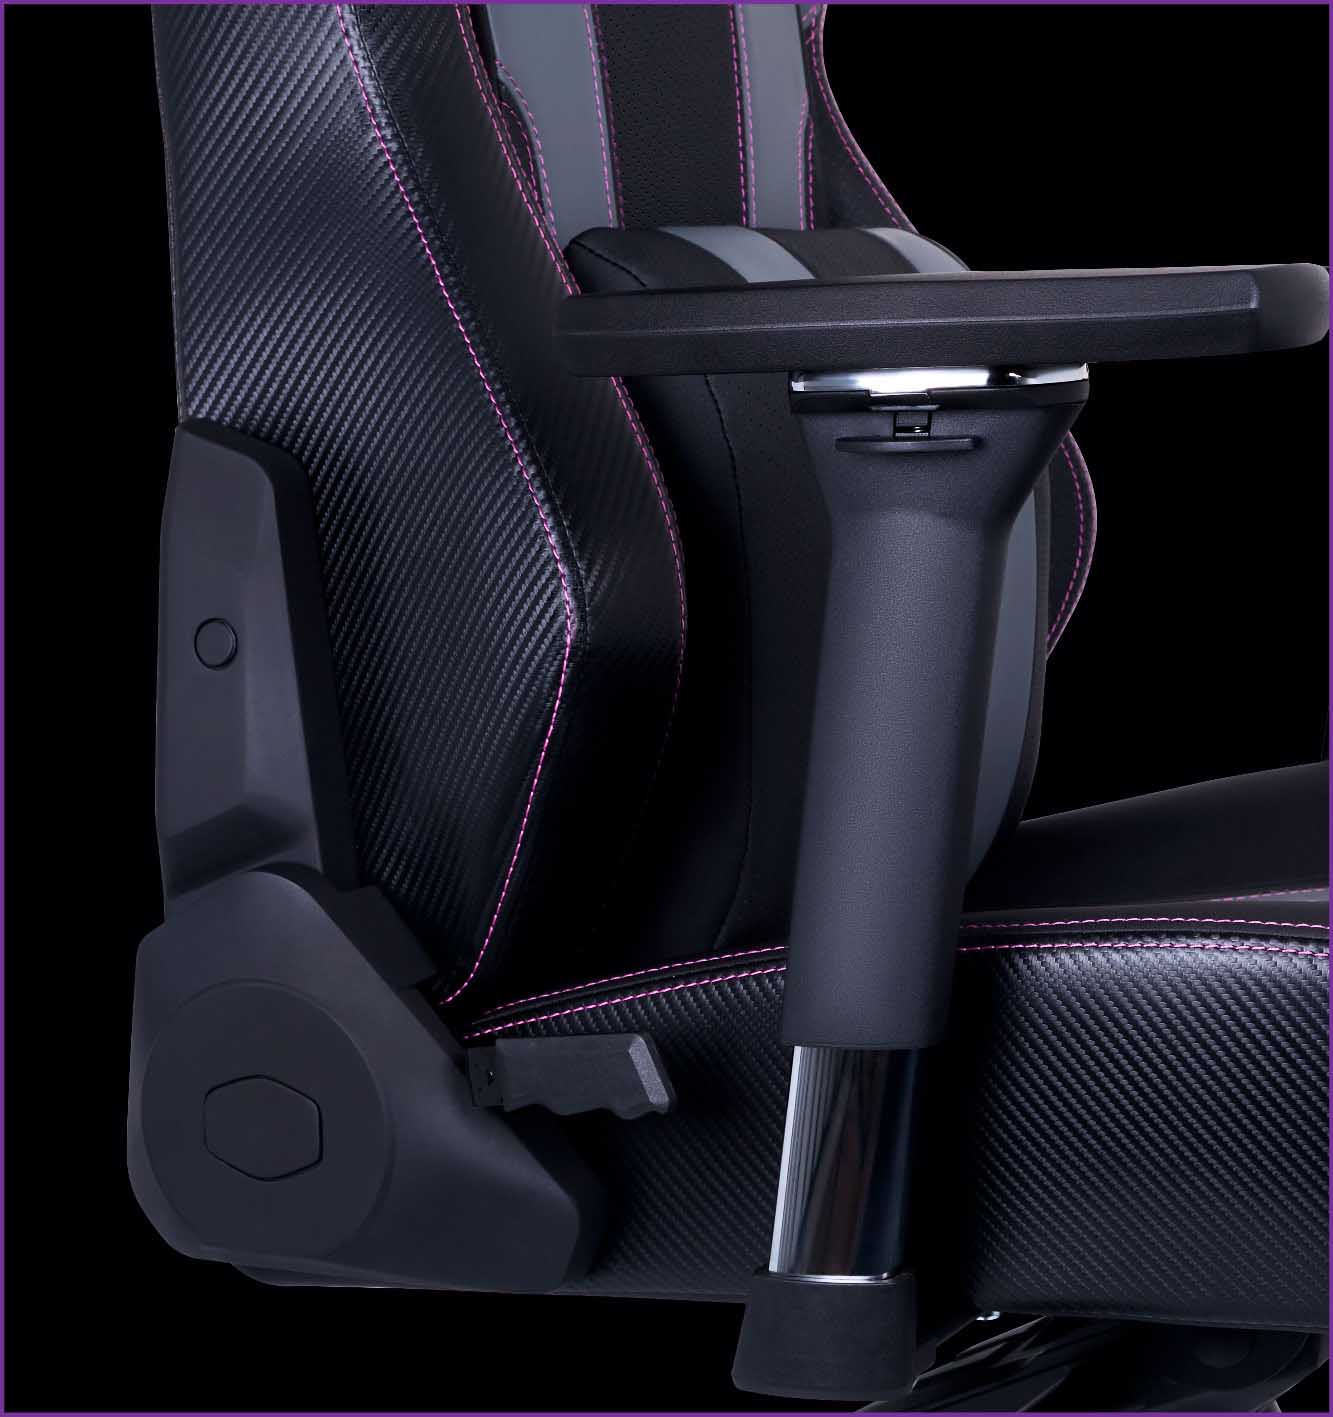 صندلی گیمینگ کولرمستر CoolerMaster Caliber X2 رنگ مشکی